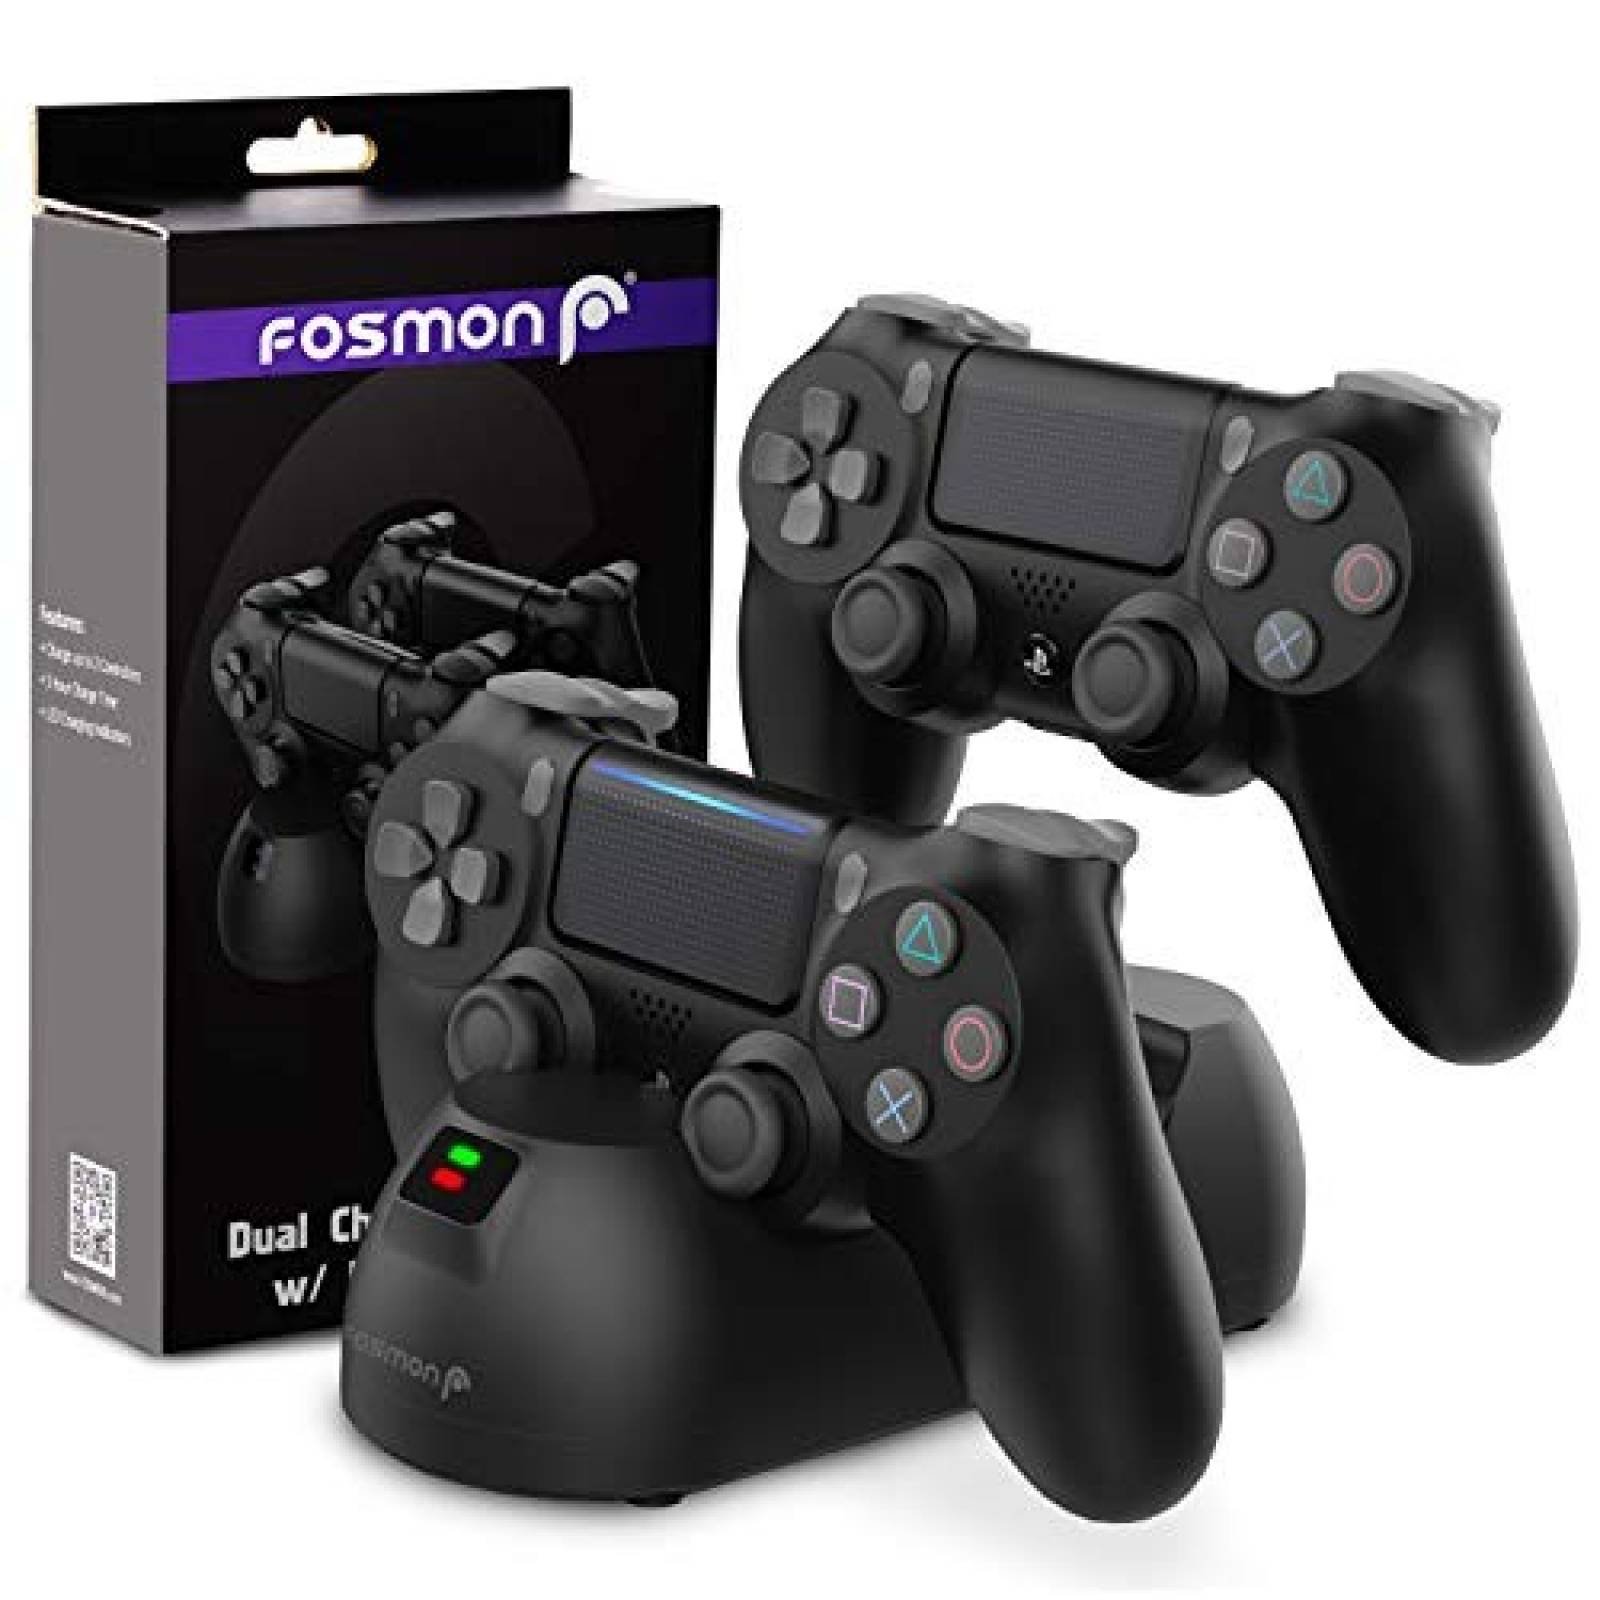 Base Cargador Fosmon para Control PS4 Carga Rapida -Negro